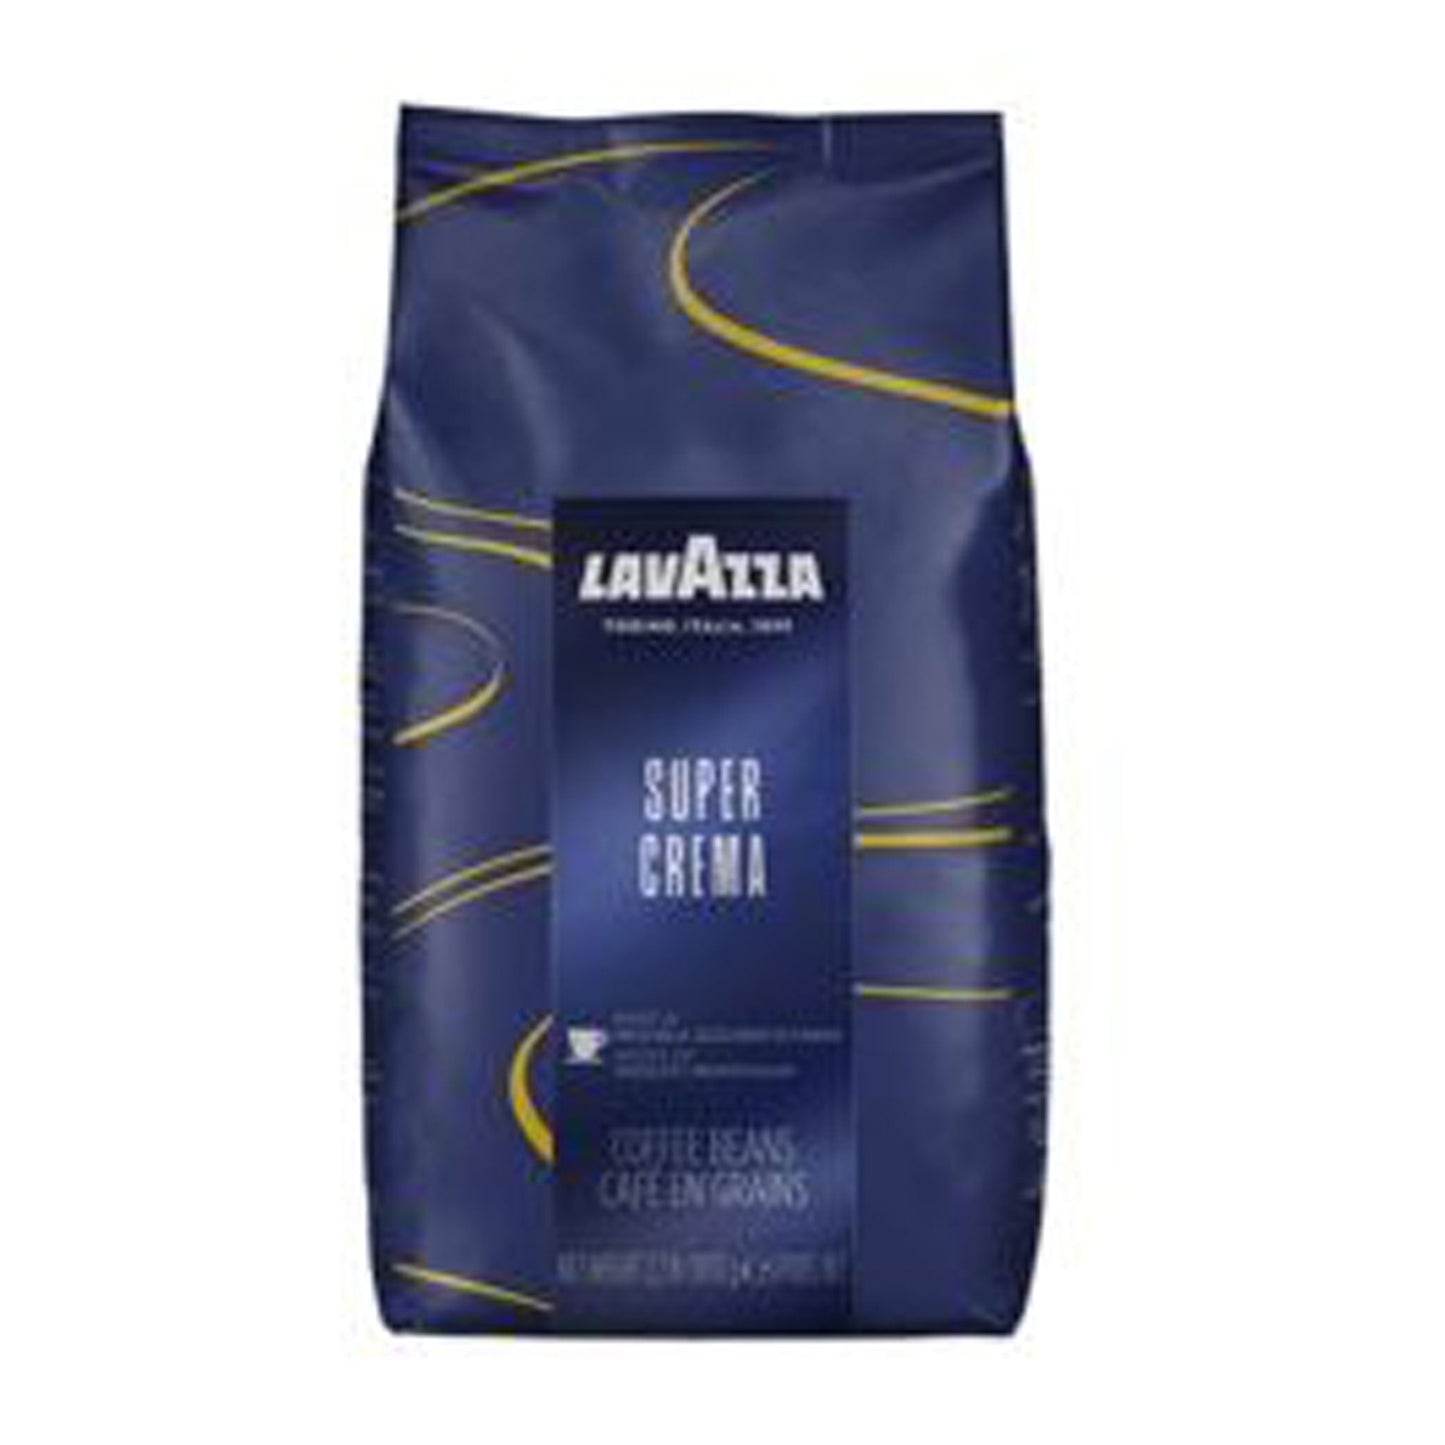 Super Crema LAVAZZA - Bohnenkaffee